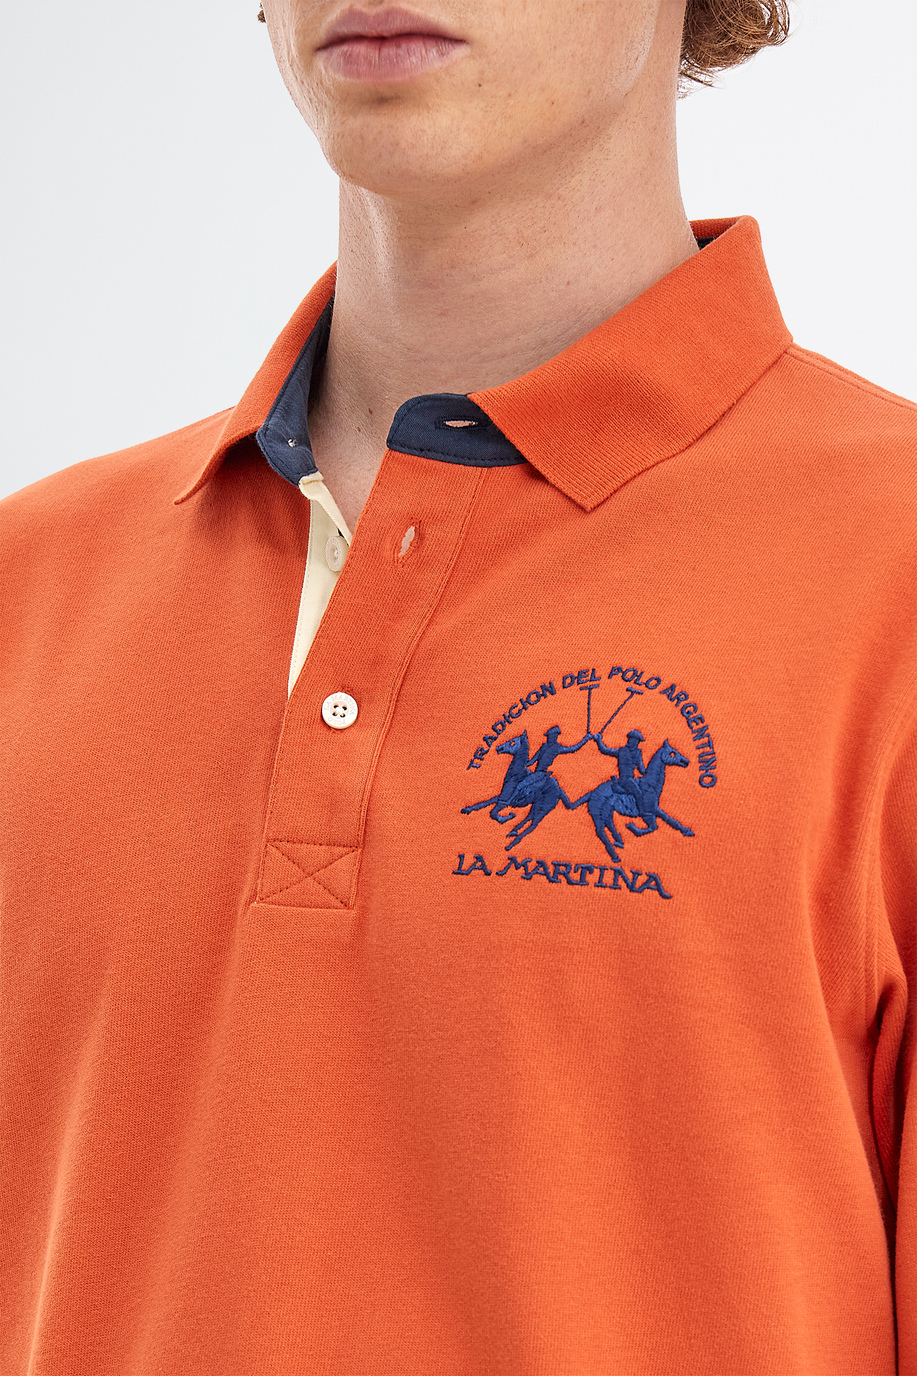 Herren-Poloshirt aus Baumwolljersey mit langen Ärmeln - Slim fit | La Martina - Official Online Shop